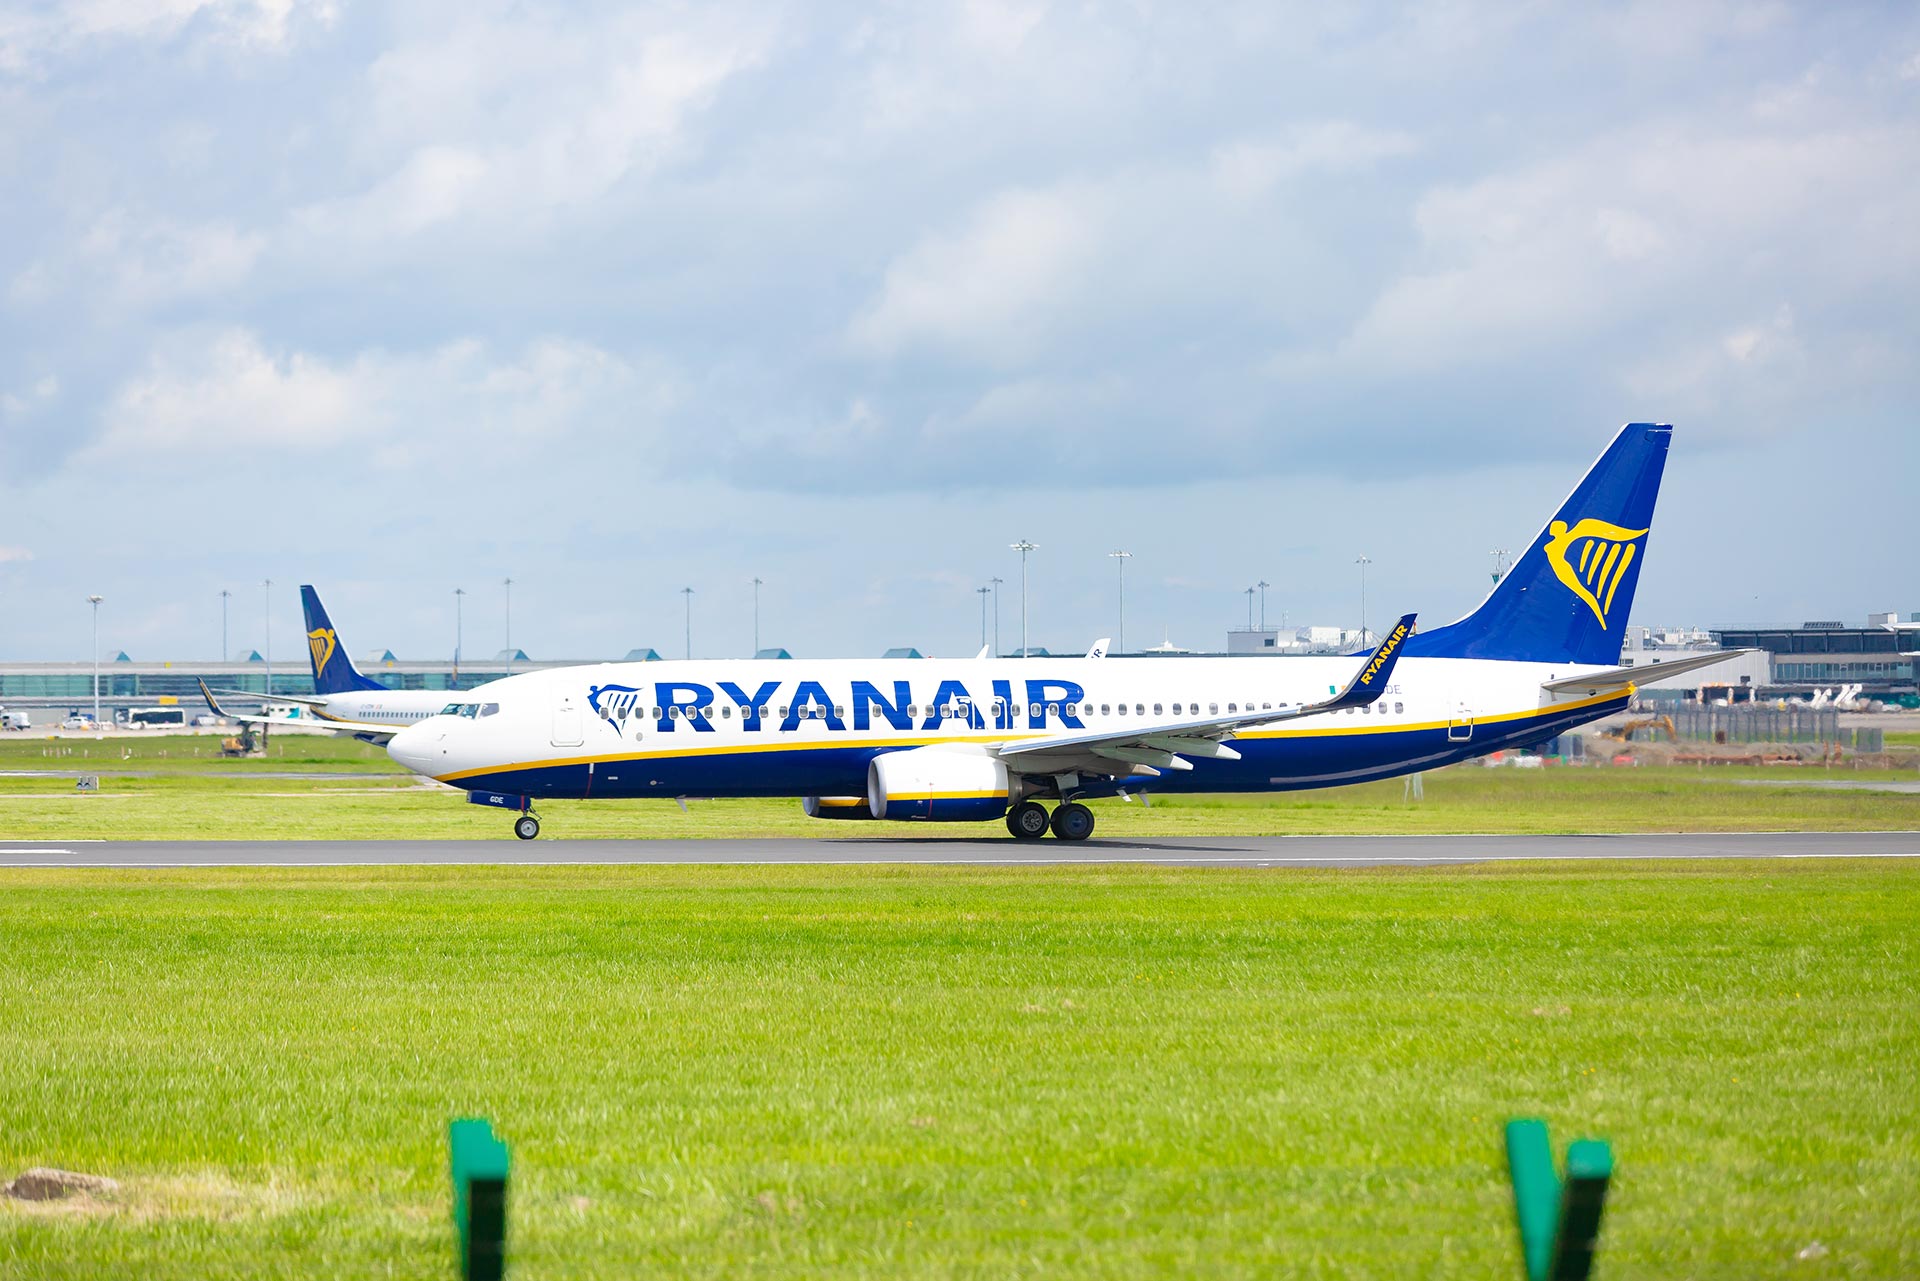 La Media De Emisiones De CO2 De Ryanair En Julio Fue De Tan Sólo 67 Gramos Por Pasajero Y Kilómetro